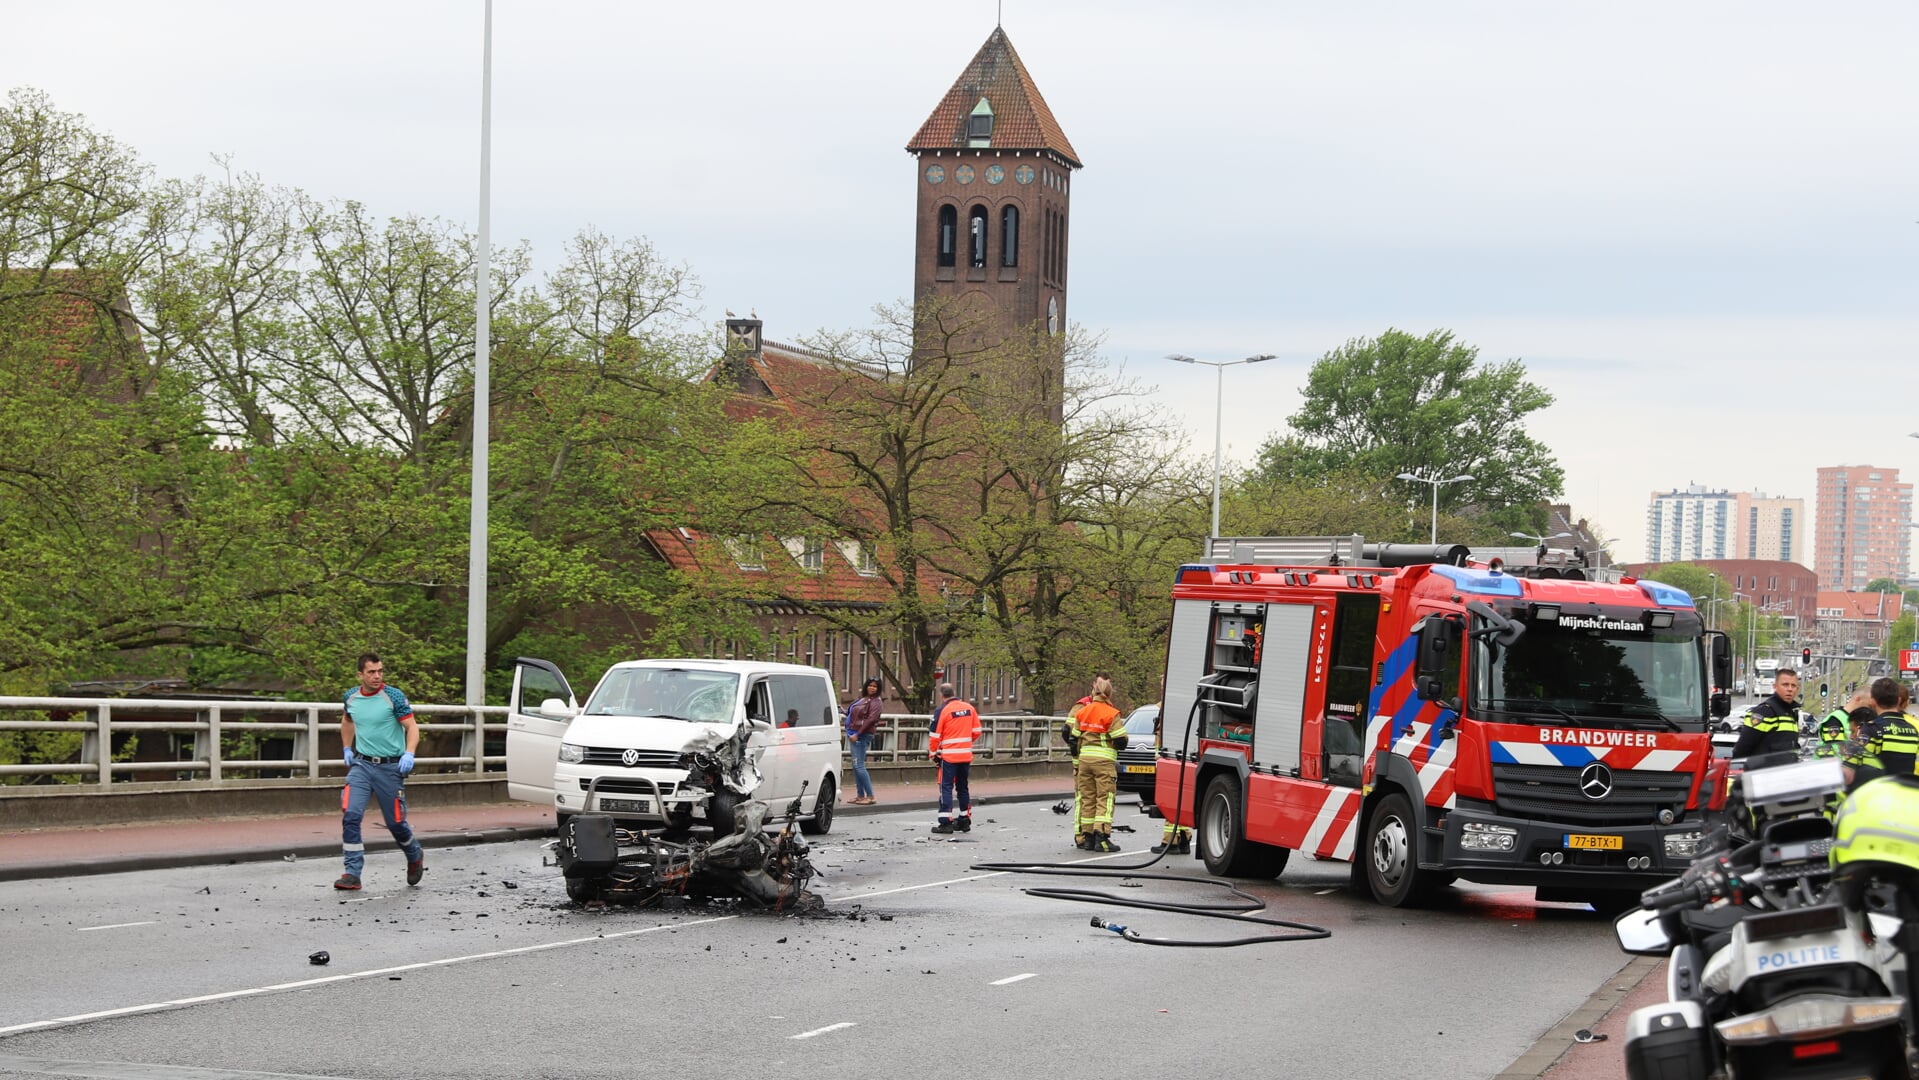 Na het ongeval vloog de motor in brand, deze is door de brandweer geblust. Foto: Spa-Media